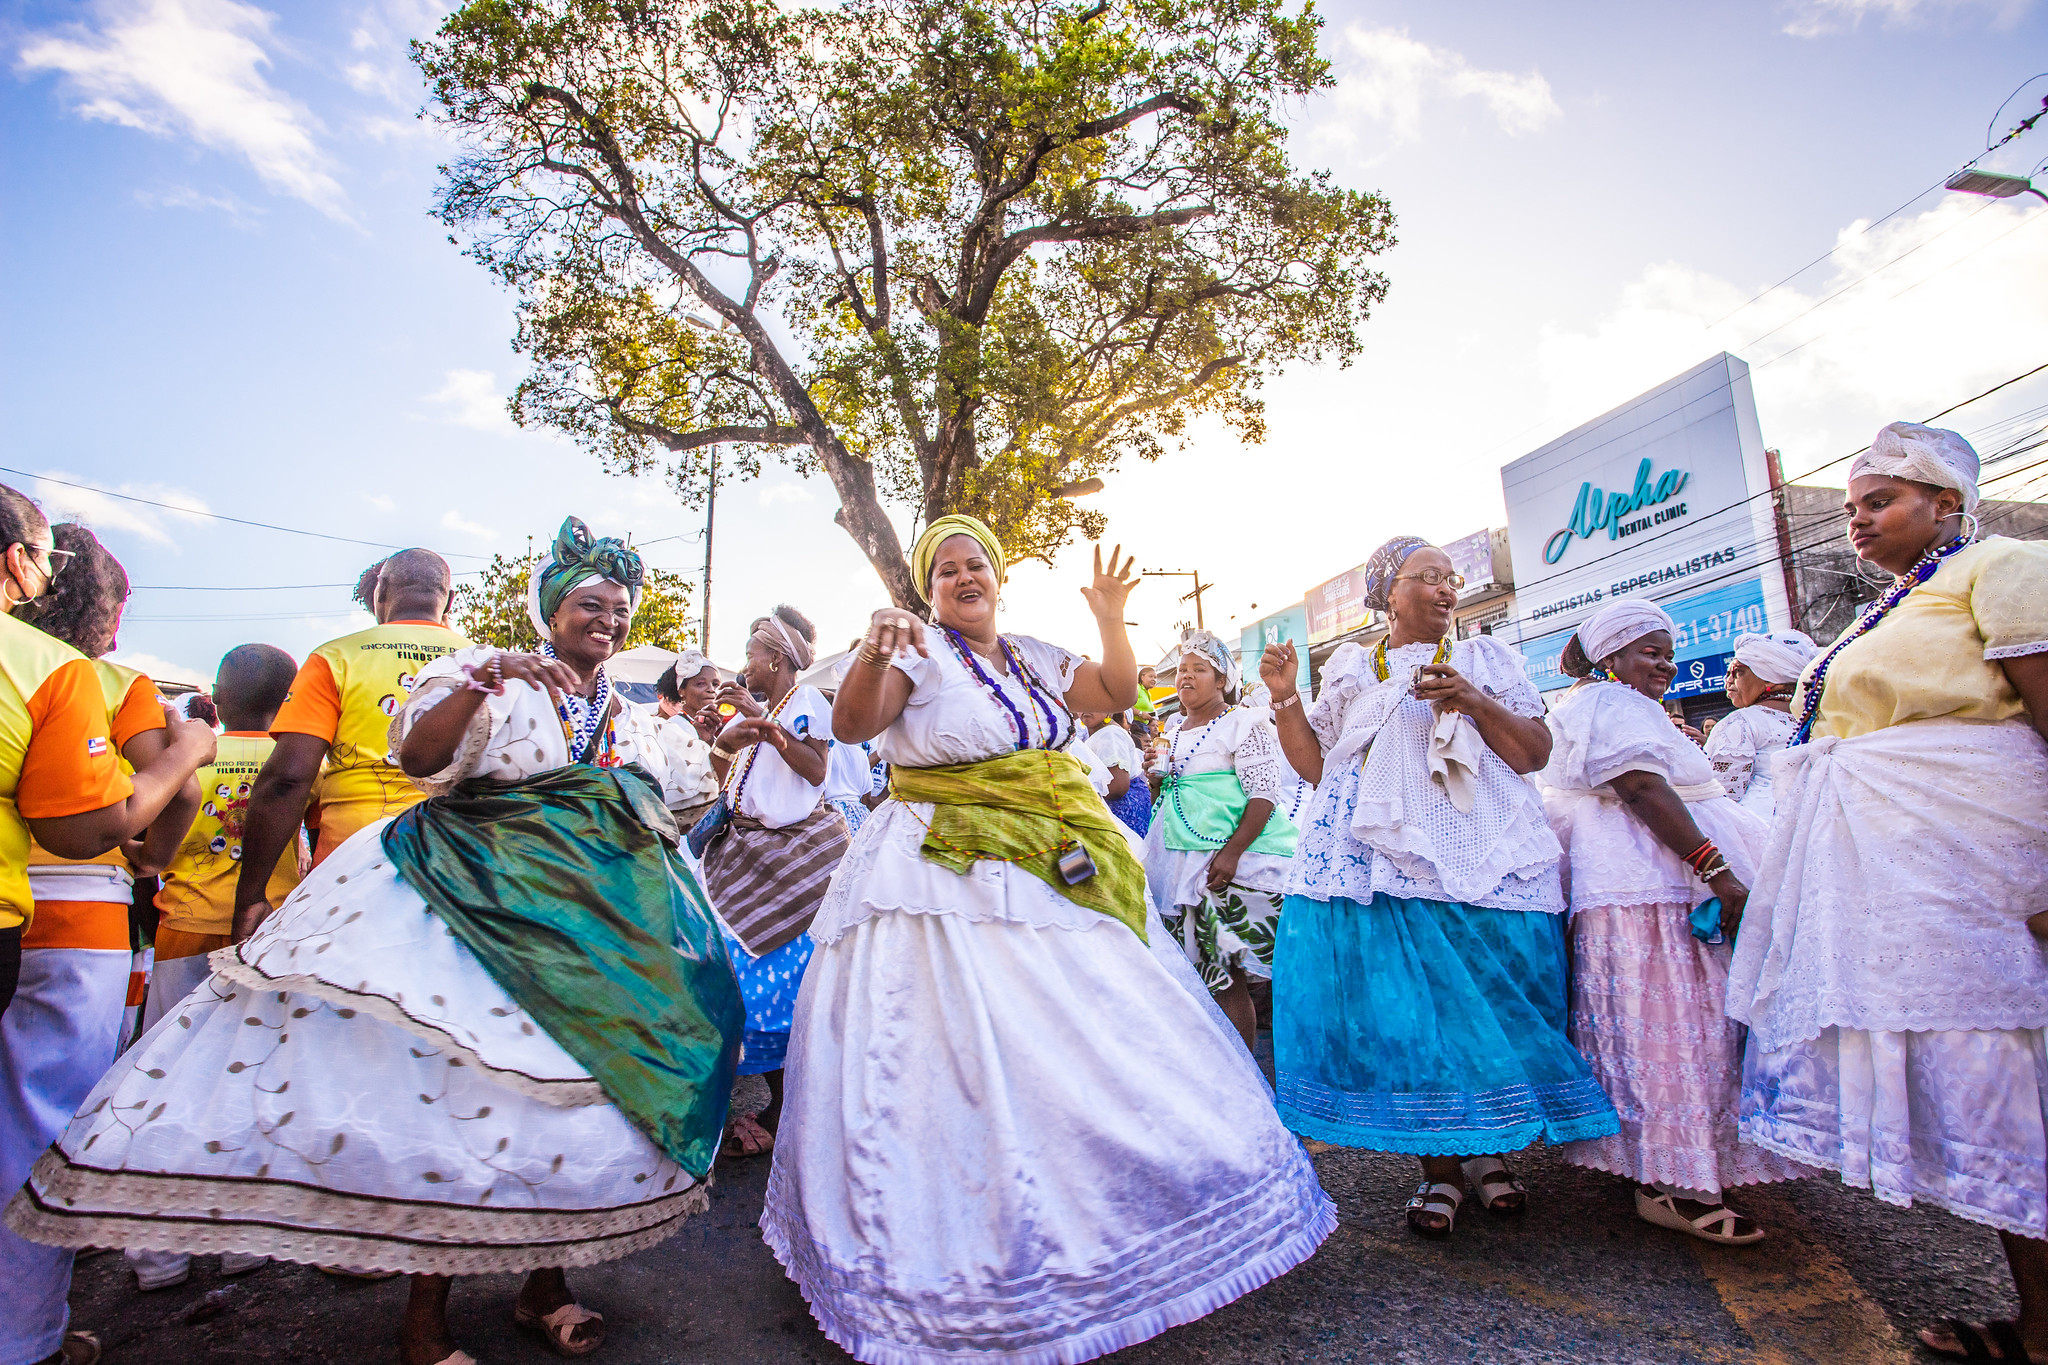 Escolas e grupos culturais retomam tradi��o de cortejo c�vico na festa de 60 anos de Lauro de Freitas